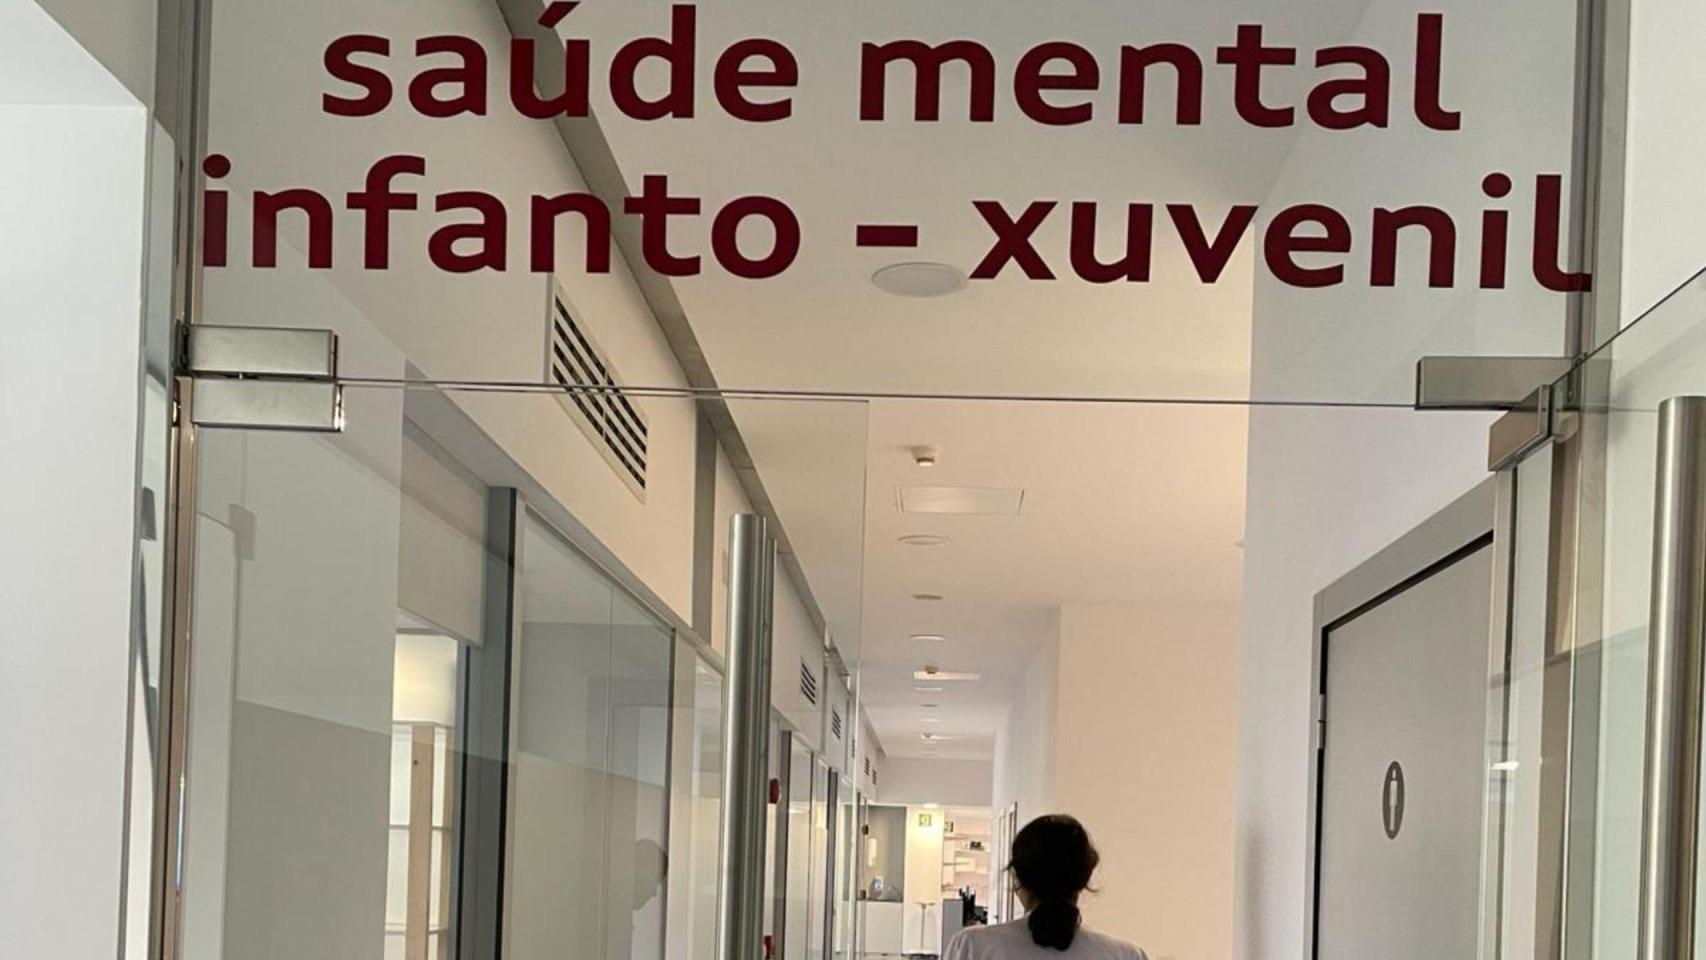 El hospital de día de salud mental infanto-juvenil de A Coruña-Cee ya está en funcionamiento